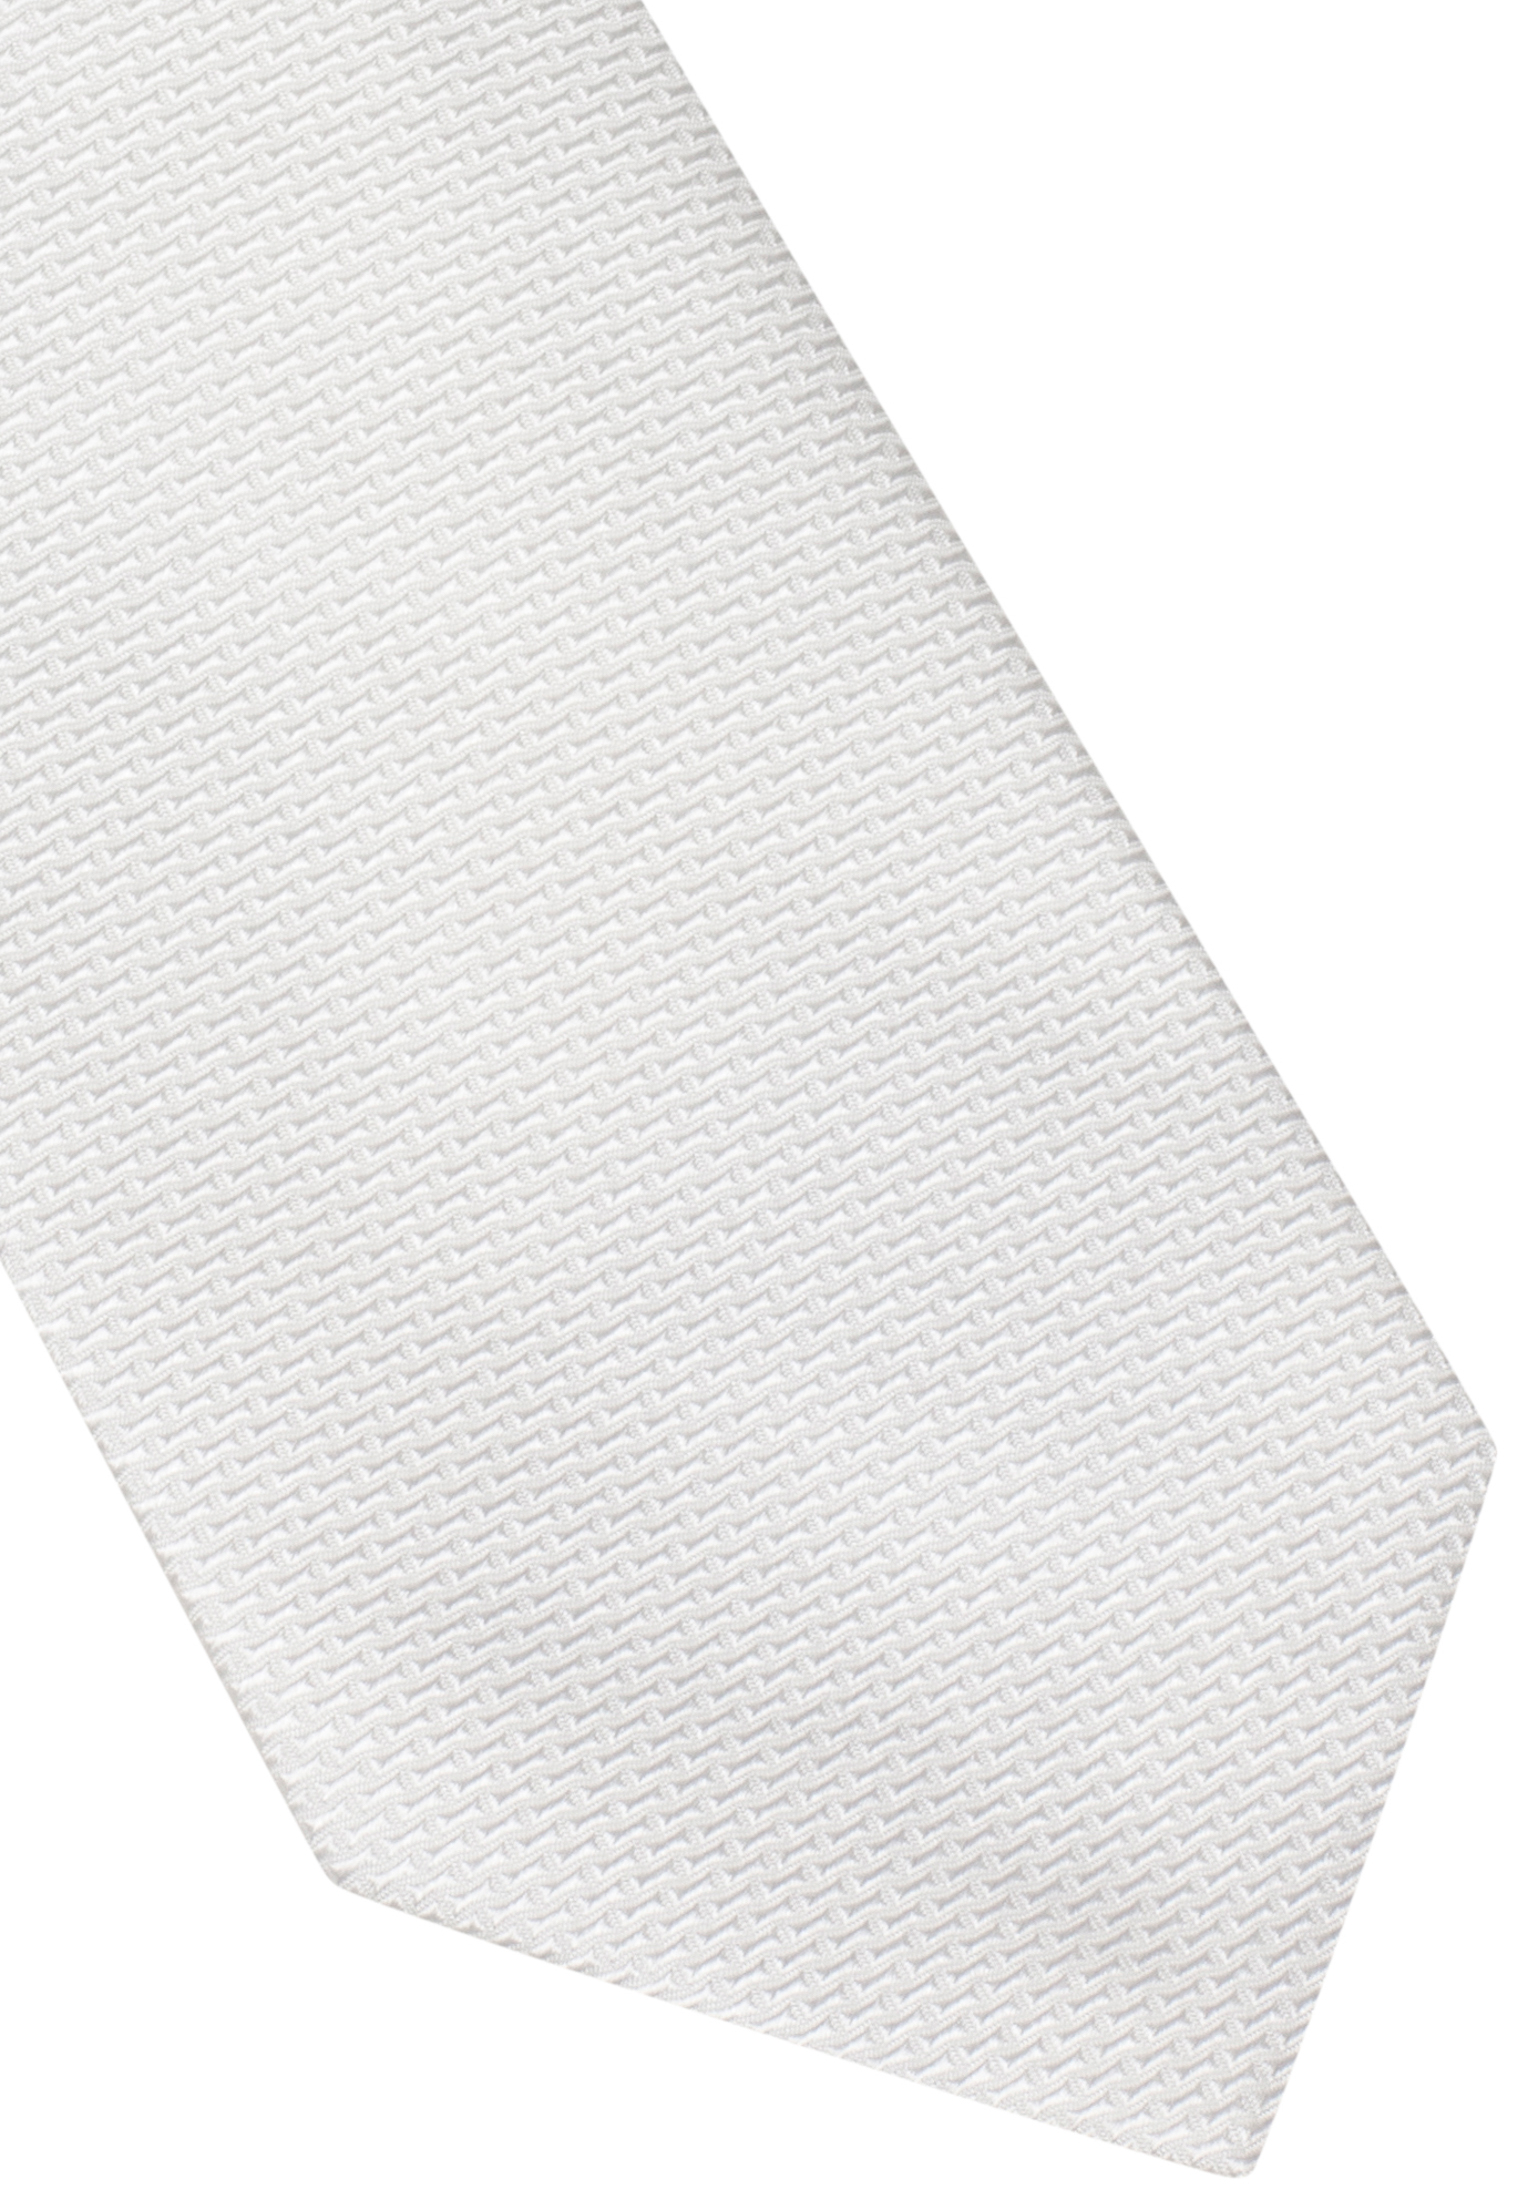 Tie in white structured